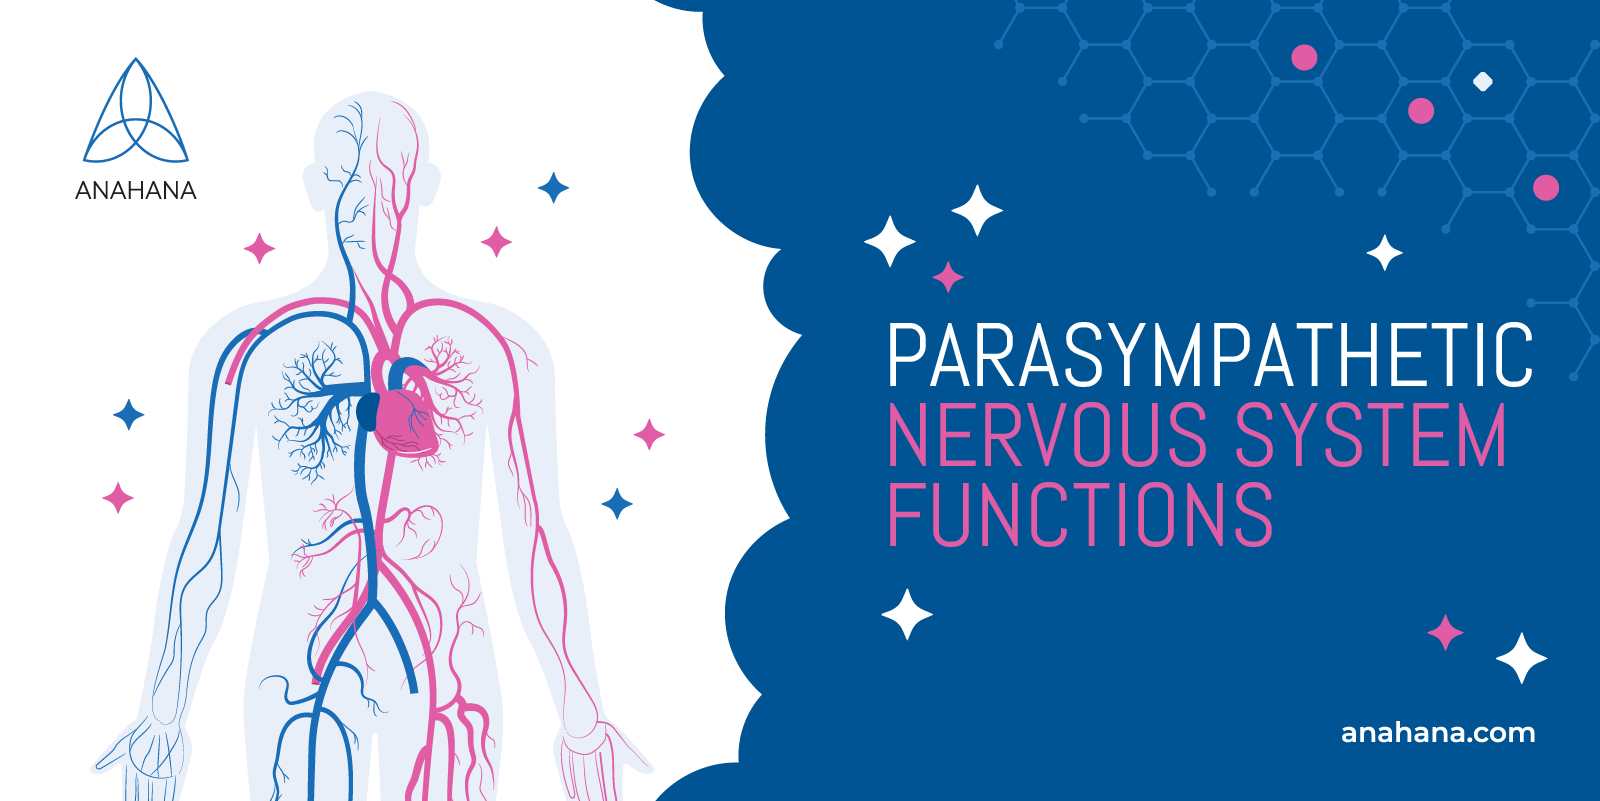 as funções do sistema nervoso parassimpático